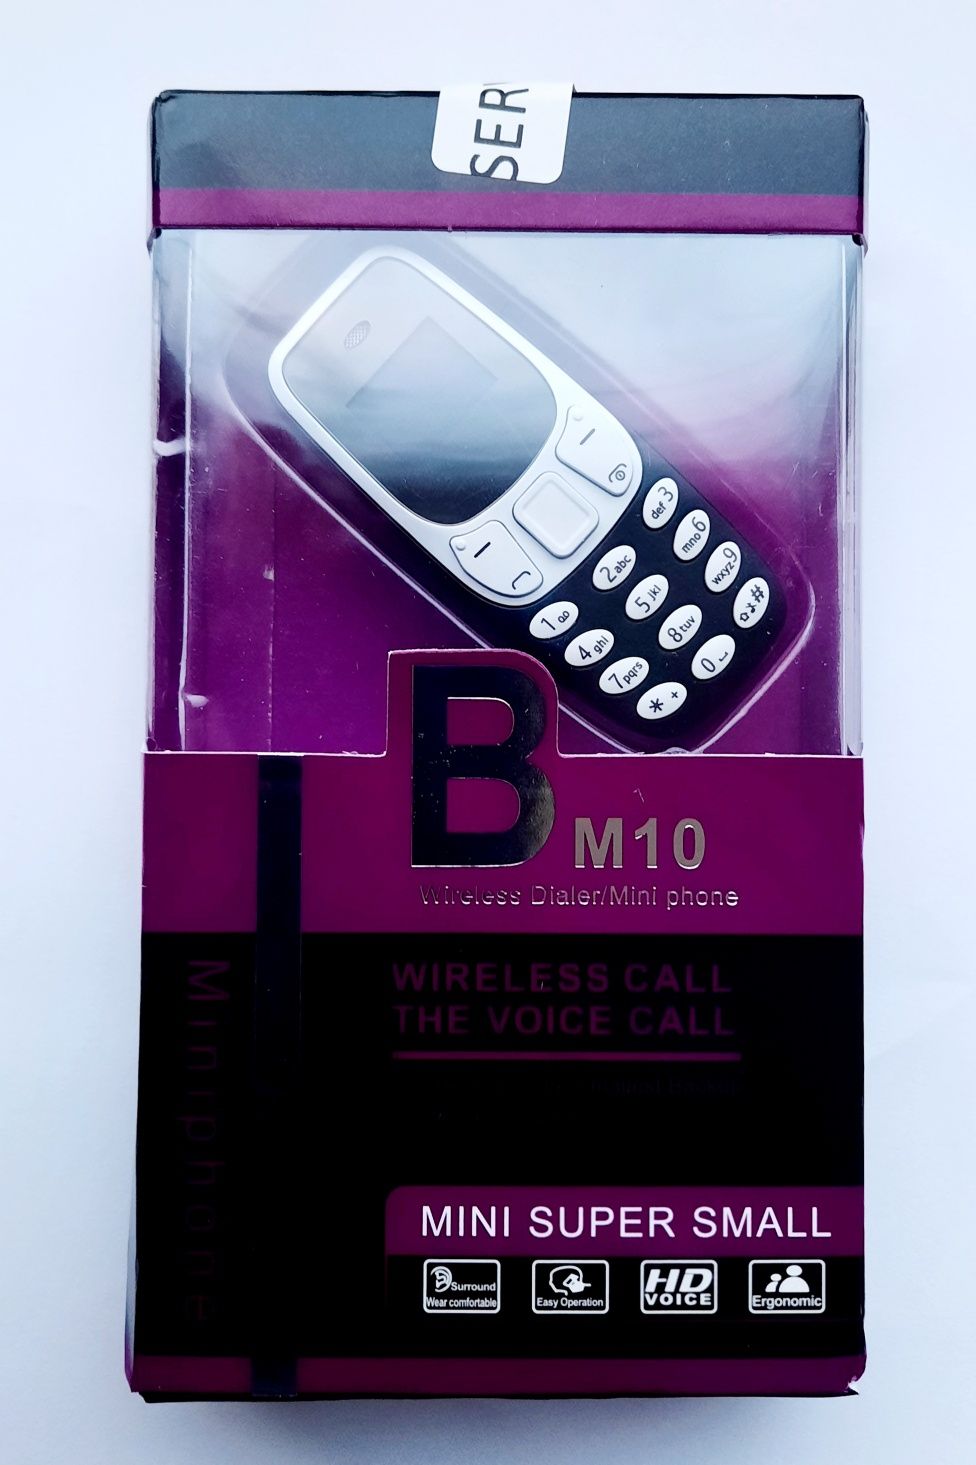 Мини маленький компактний телефон SERVO BM10